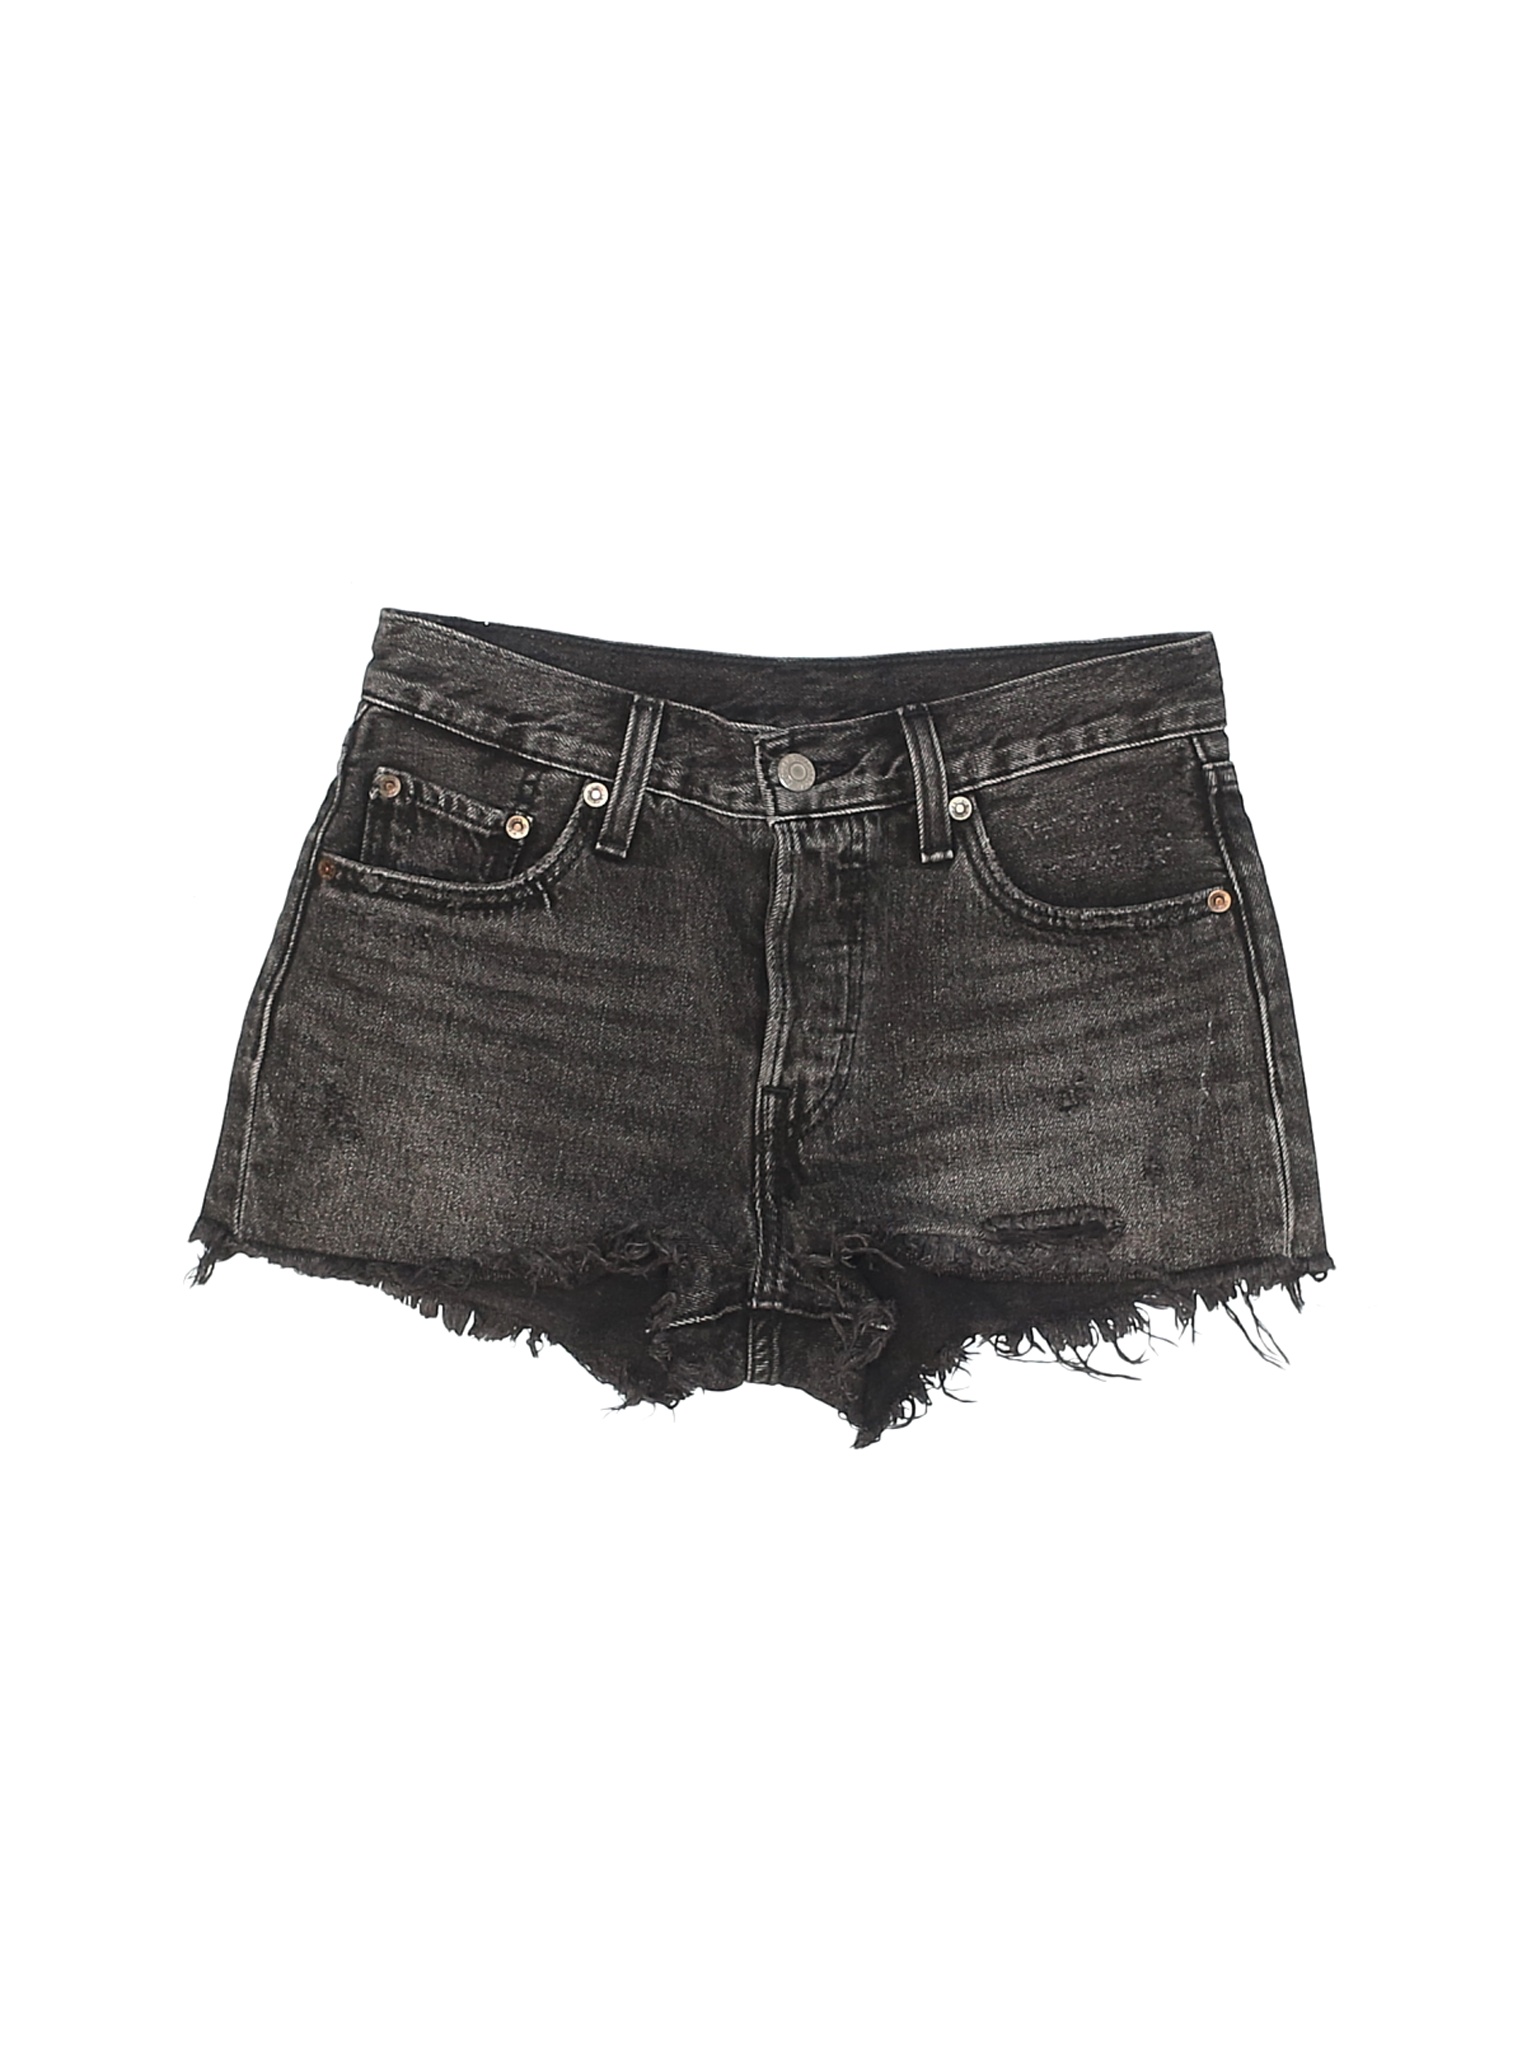 Levi's Women Black Denim Shorts 25W | eBay